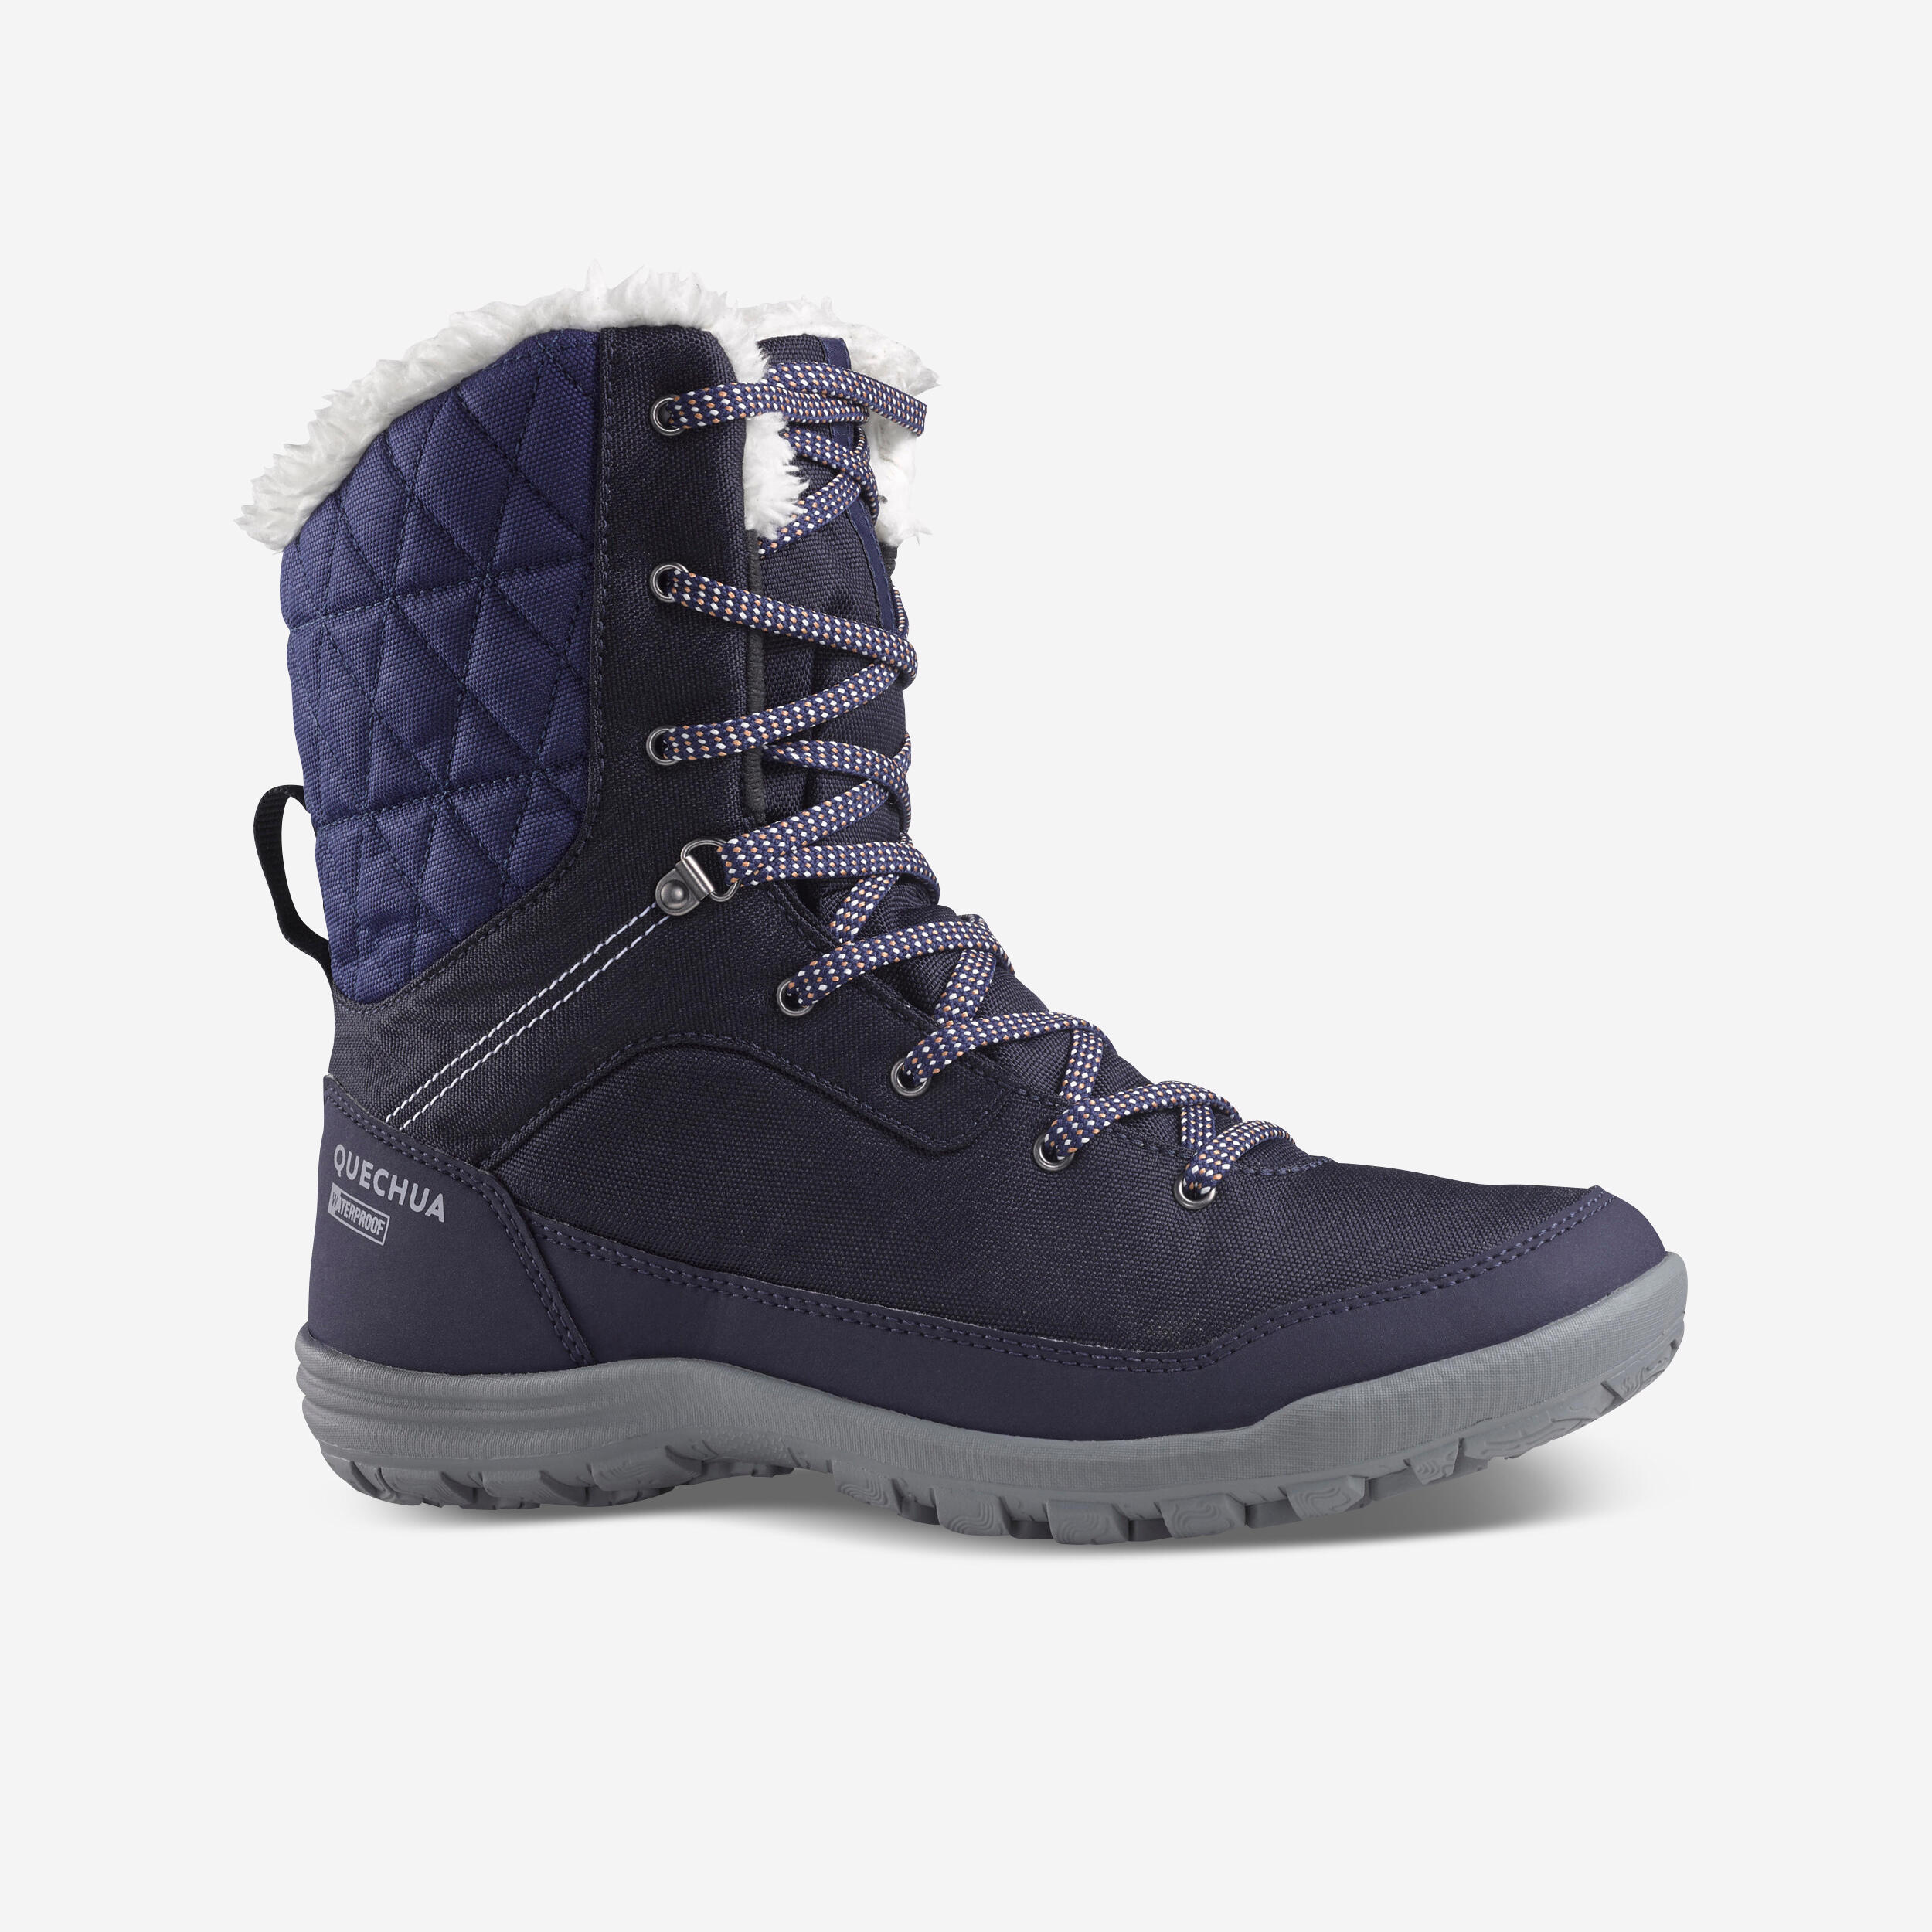 Women’s Winter Boots - SH 100 - QUECHUA